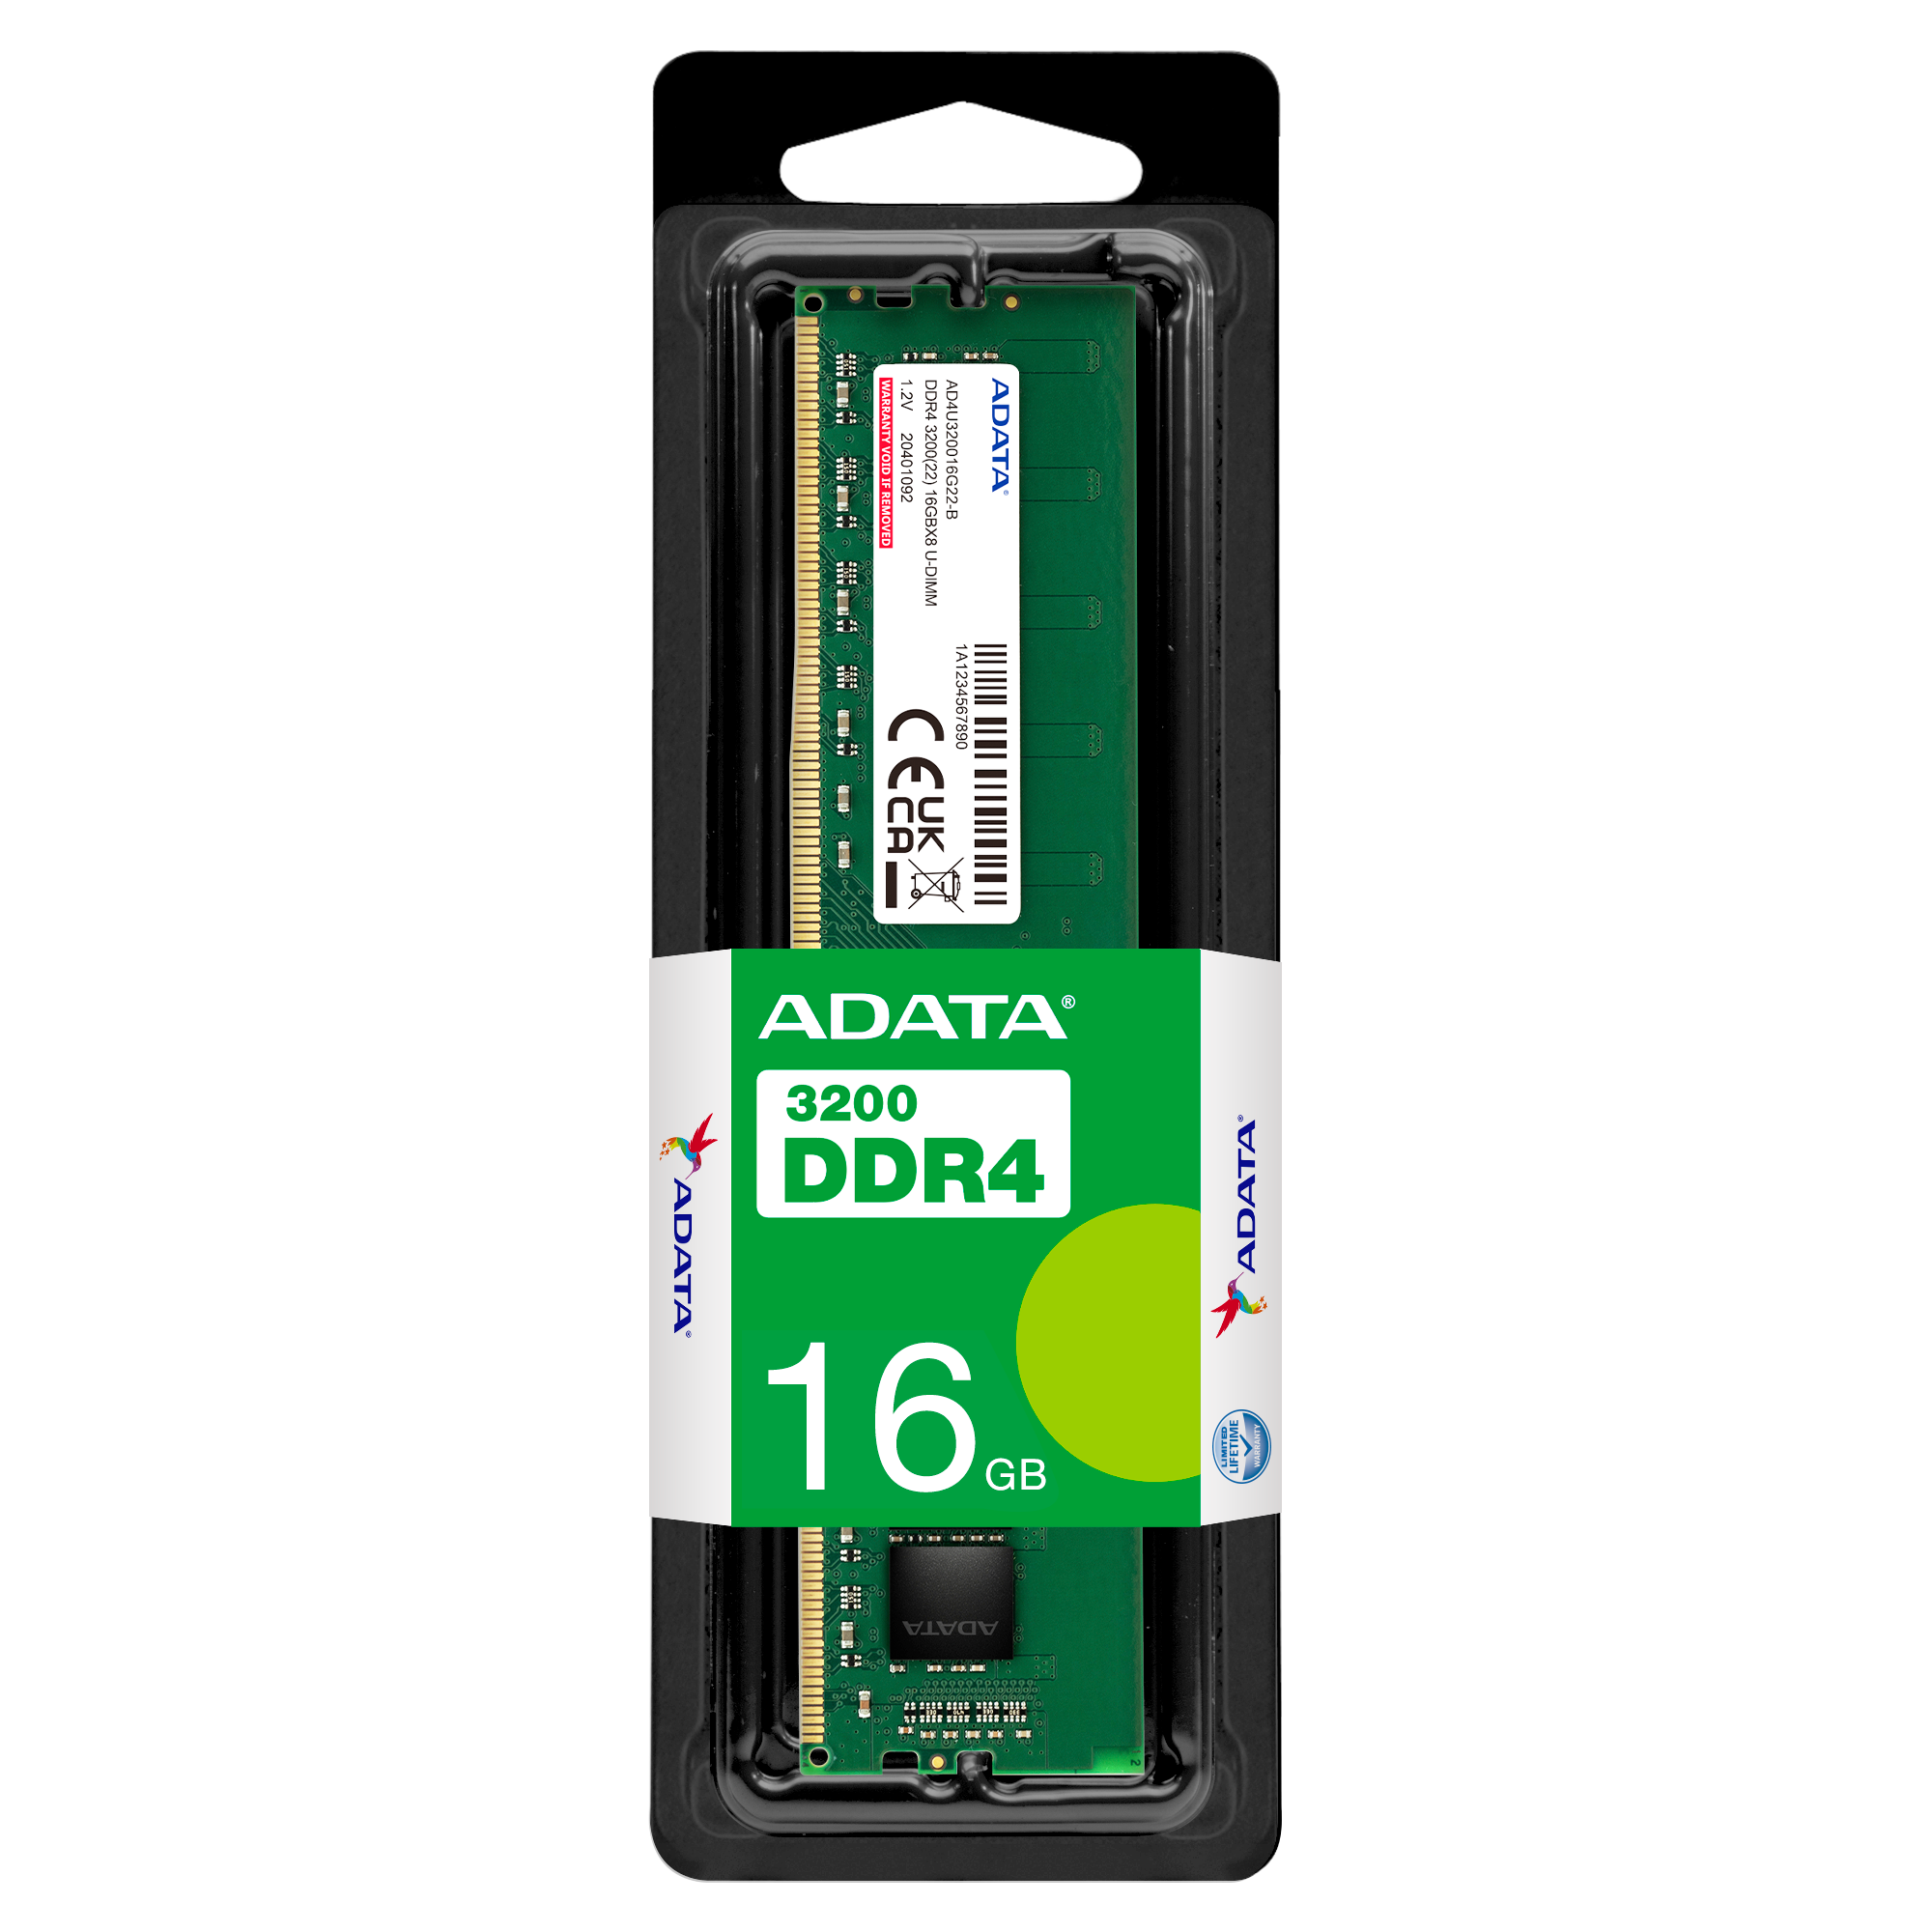 ADATA Premier (DDR4 | 3200MHz) 16GB